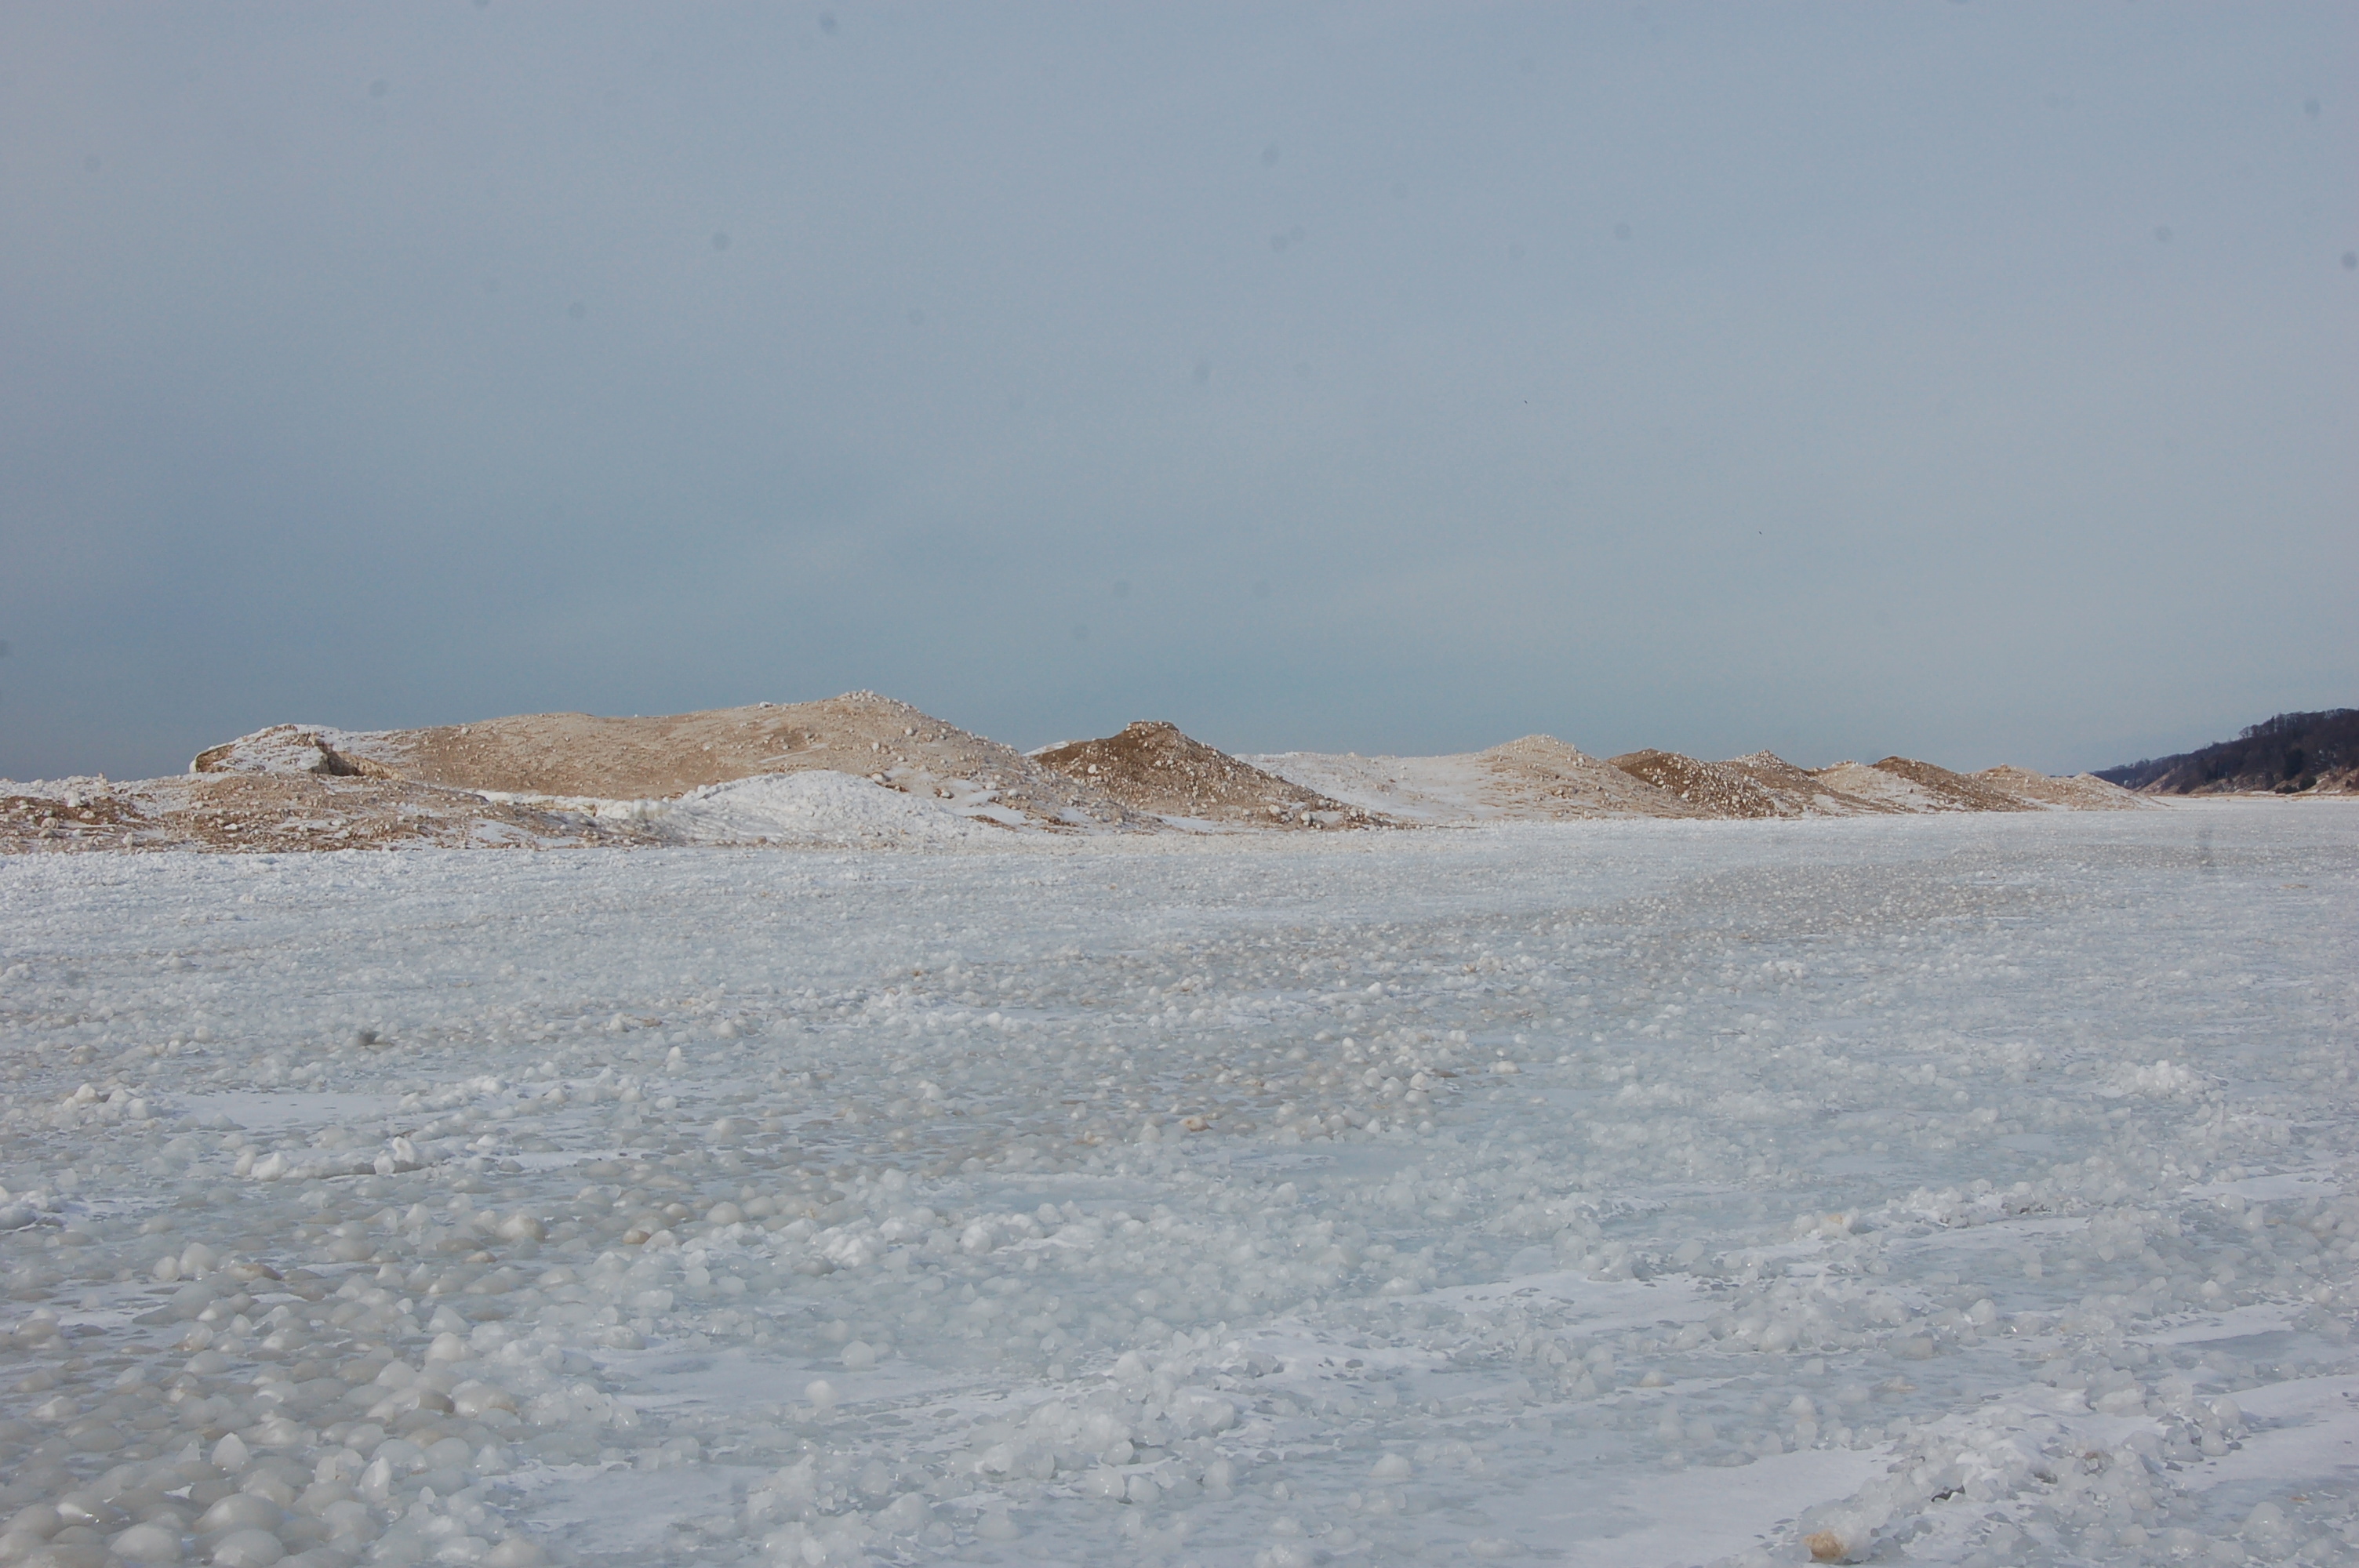 Frozen snow dunes